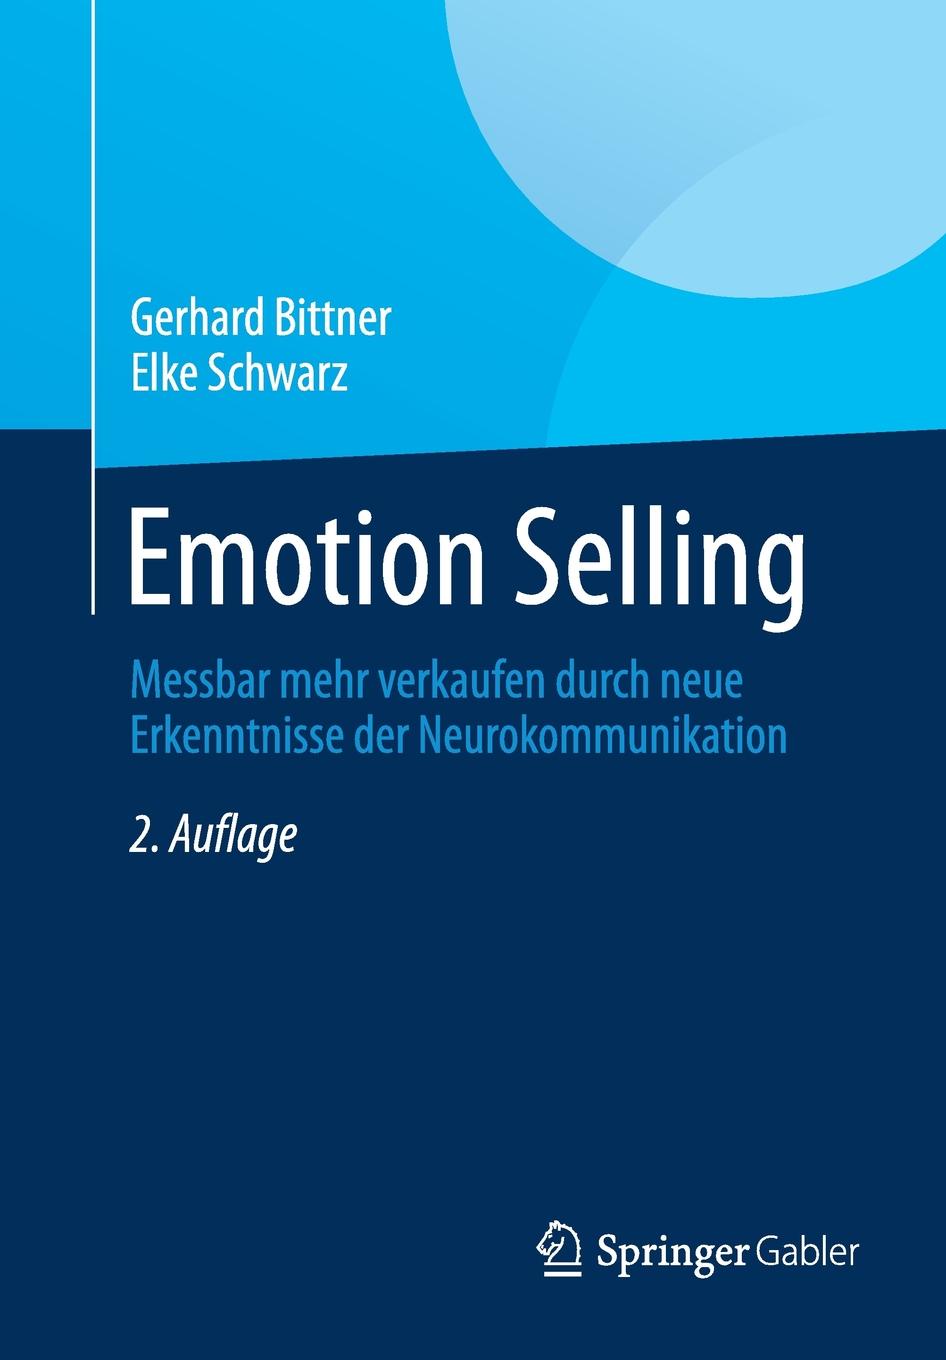 Emotion Selling. Messbar mehr verkaufen durch neue Erkenntnisse der Neurokommunikation